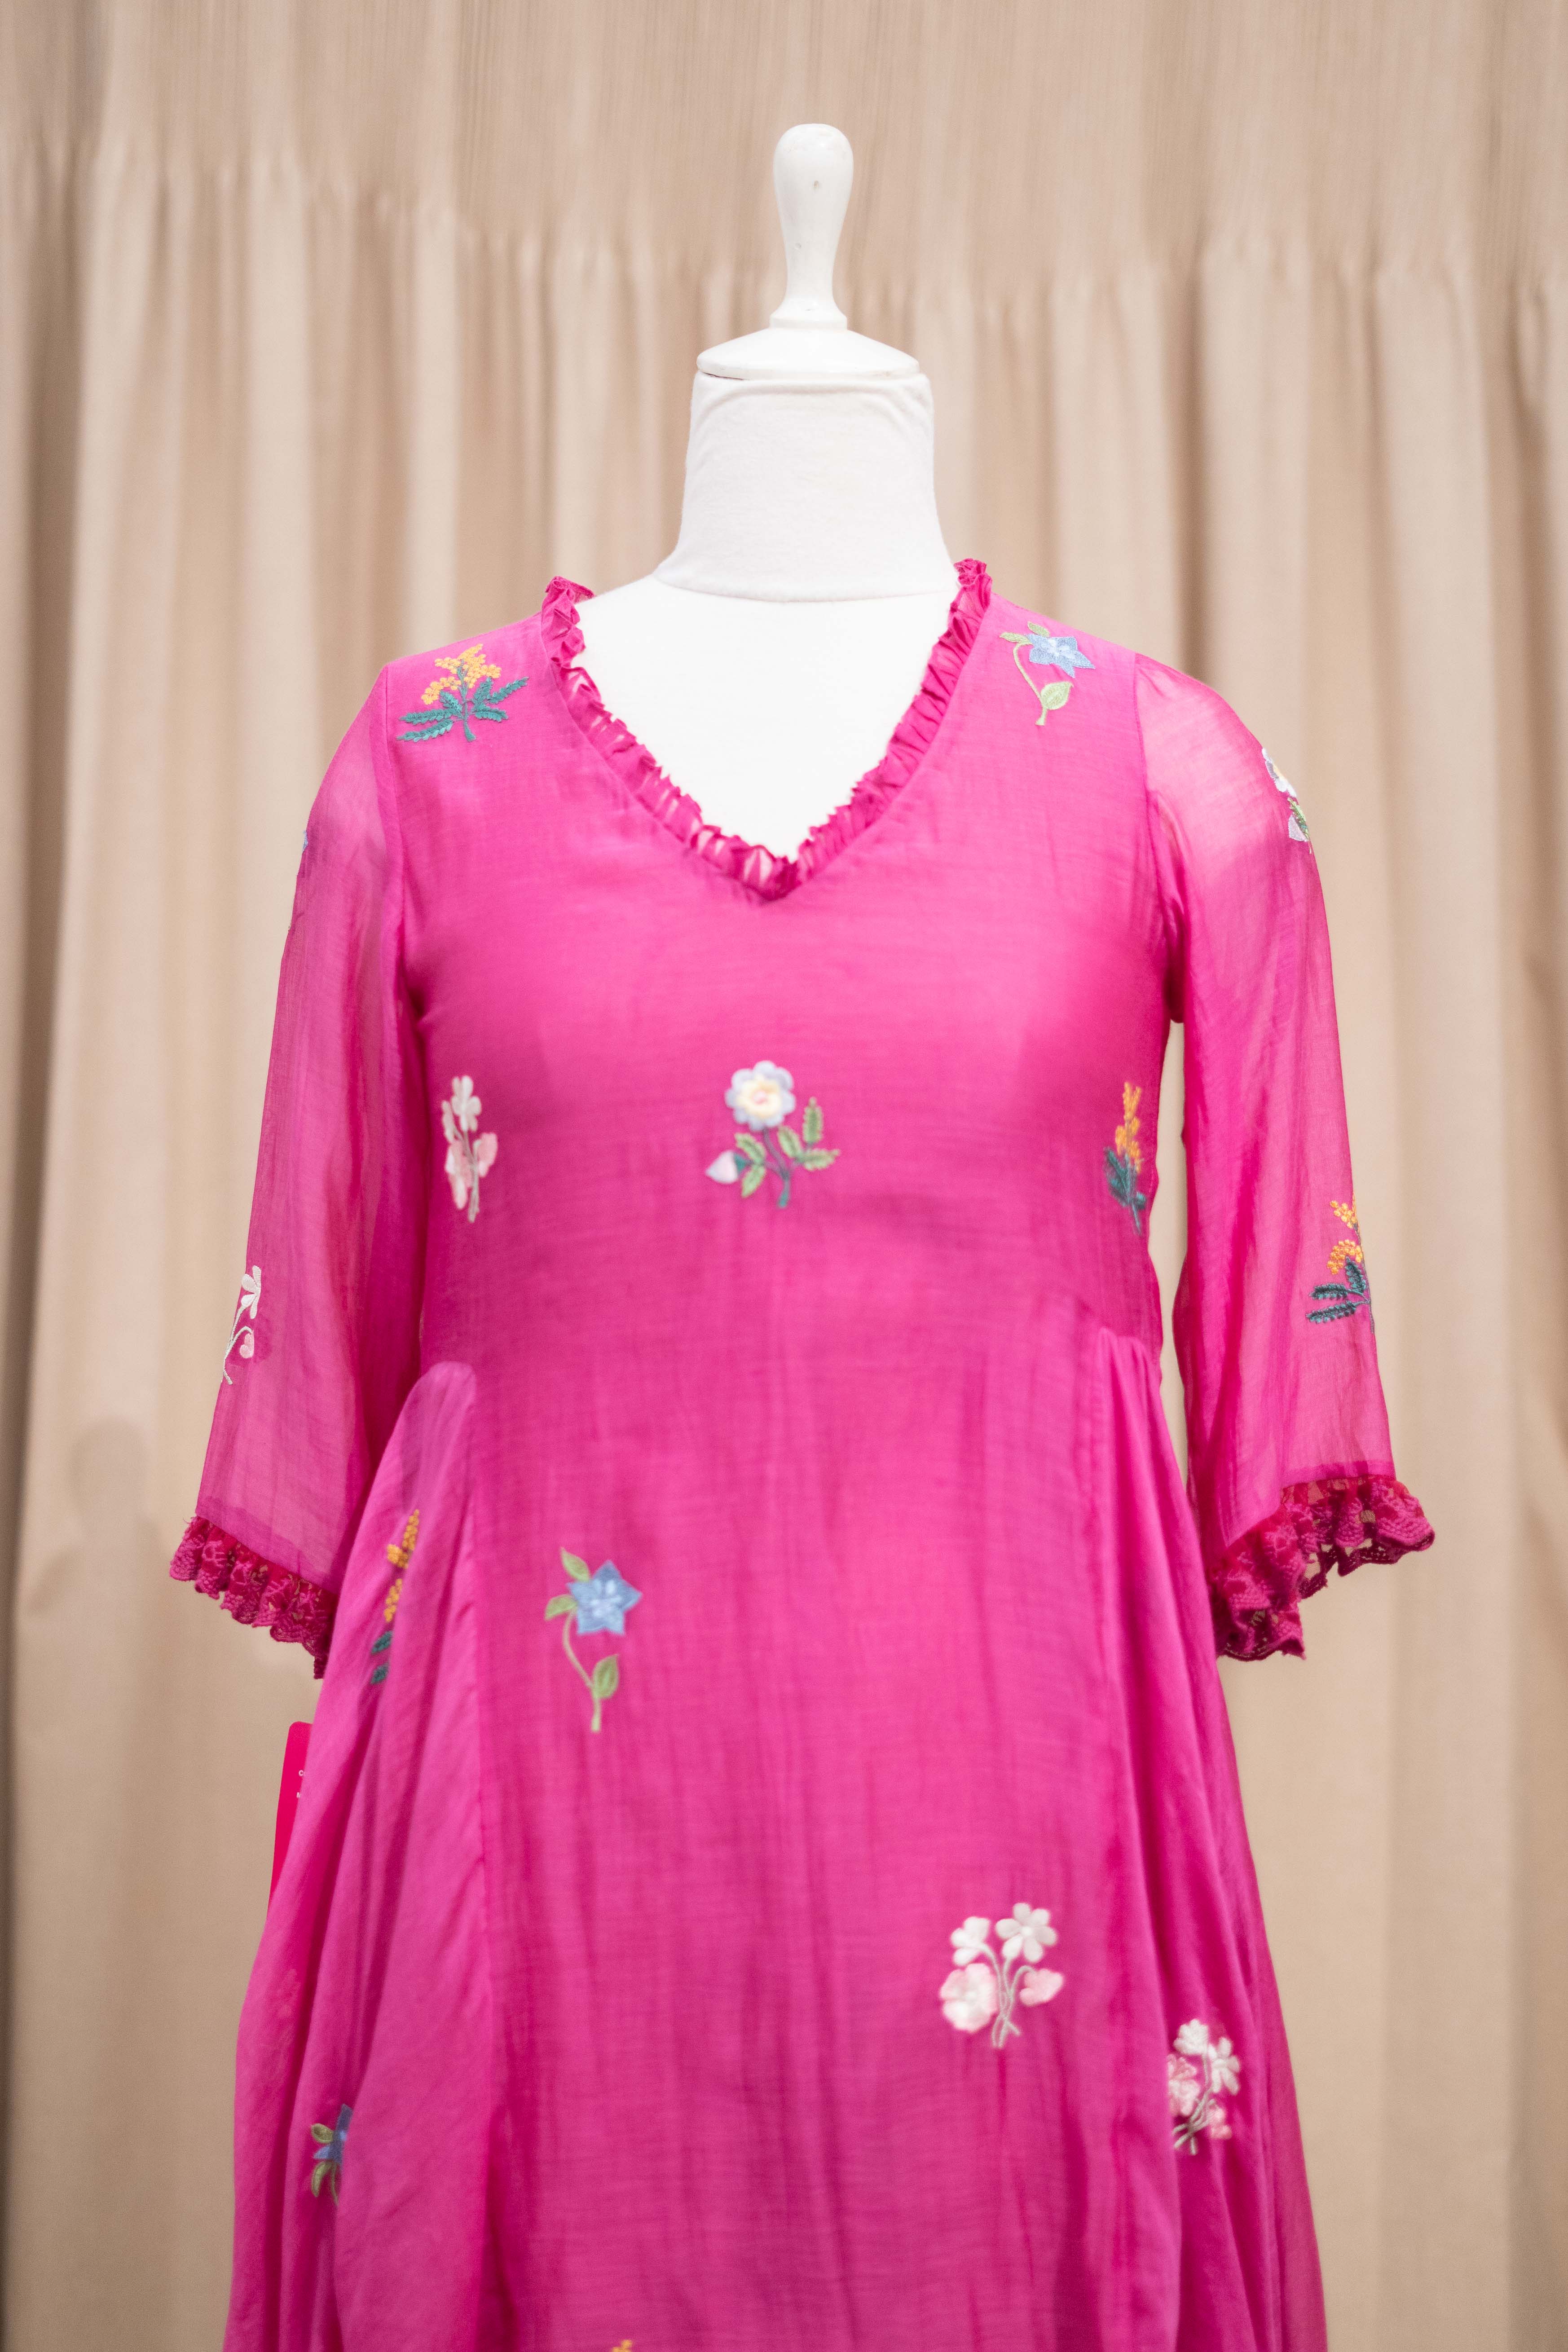 DS - pink asymmetric dress